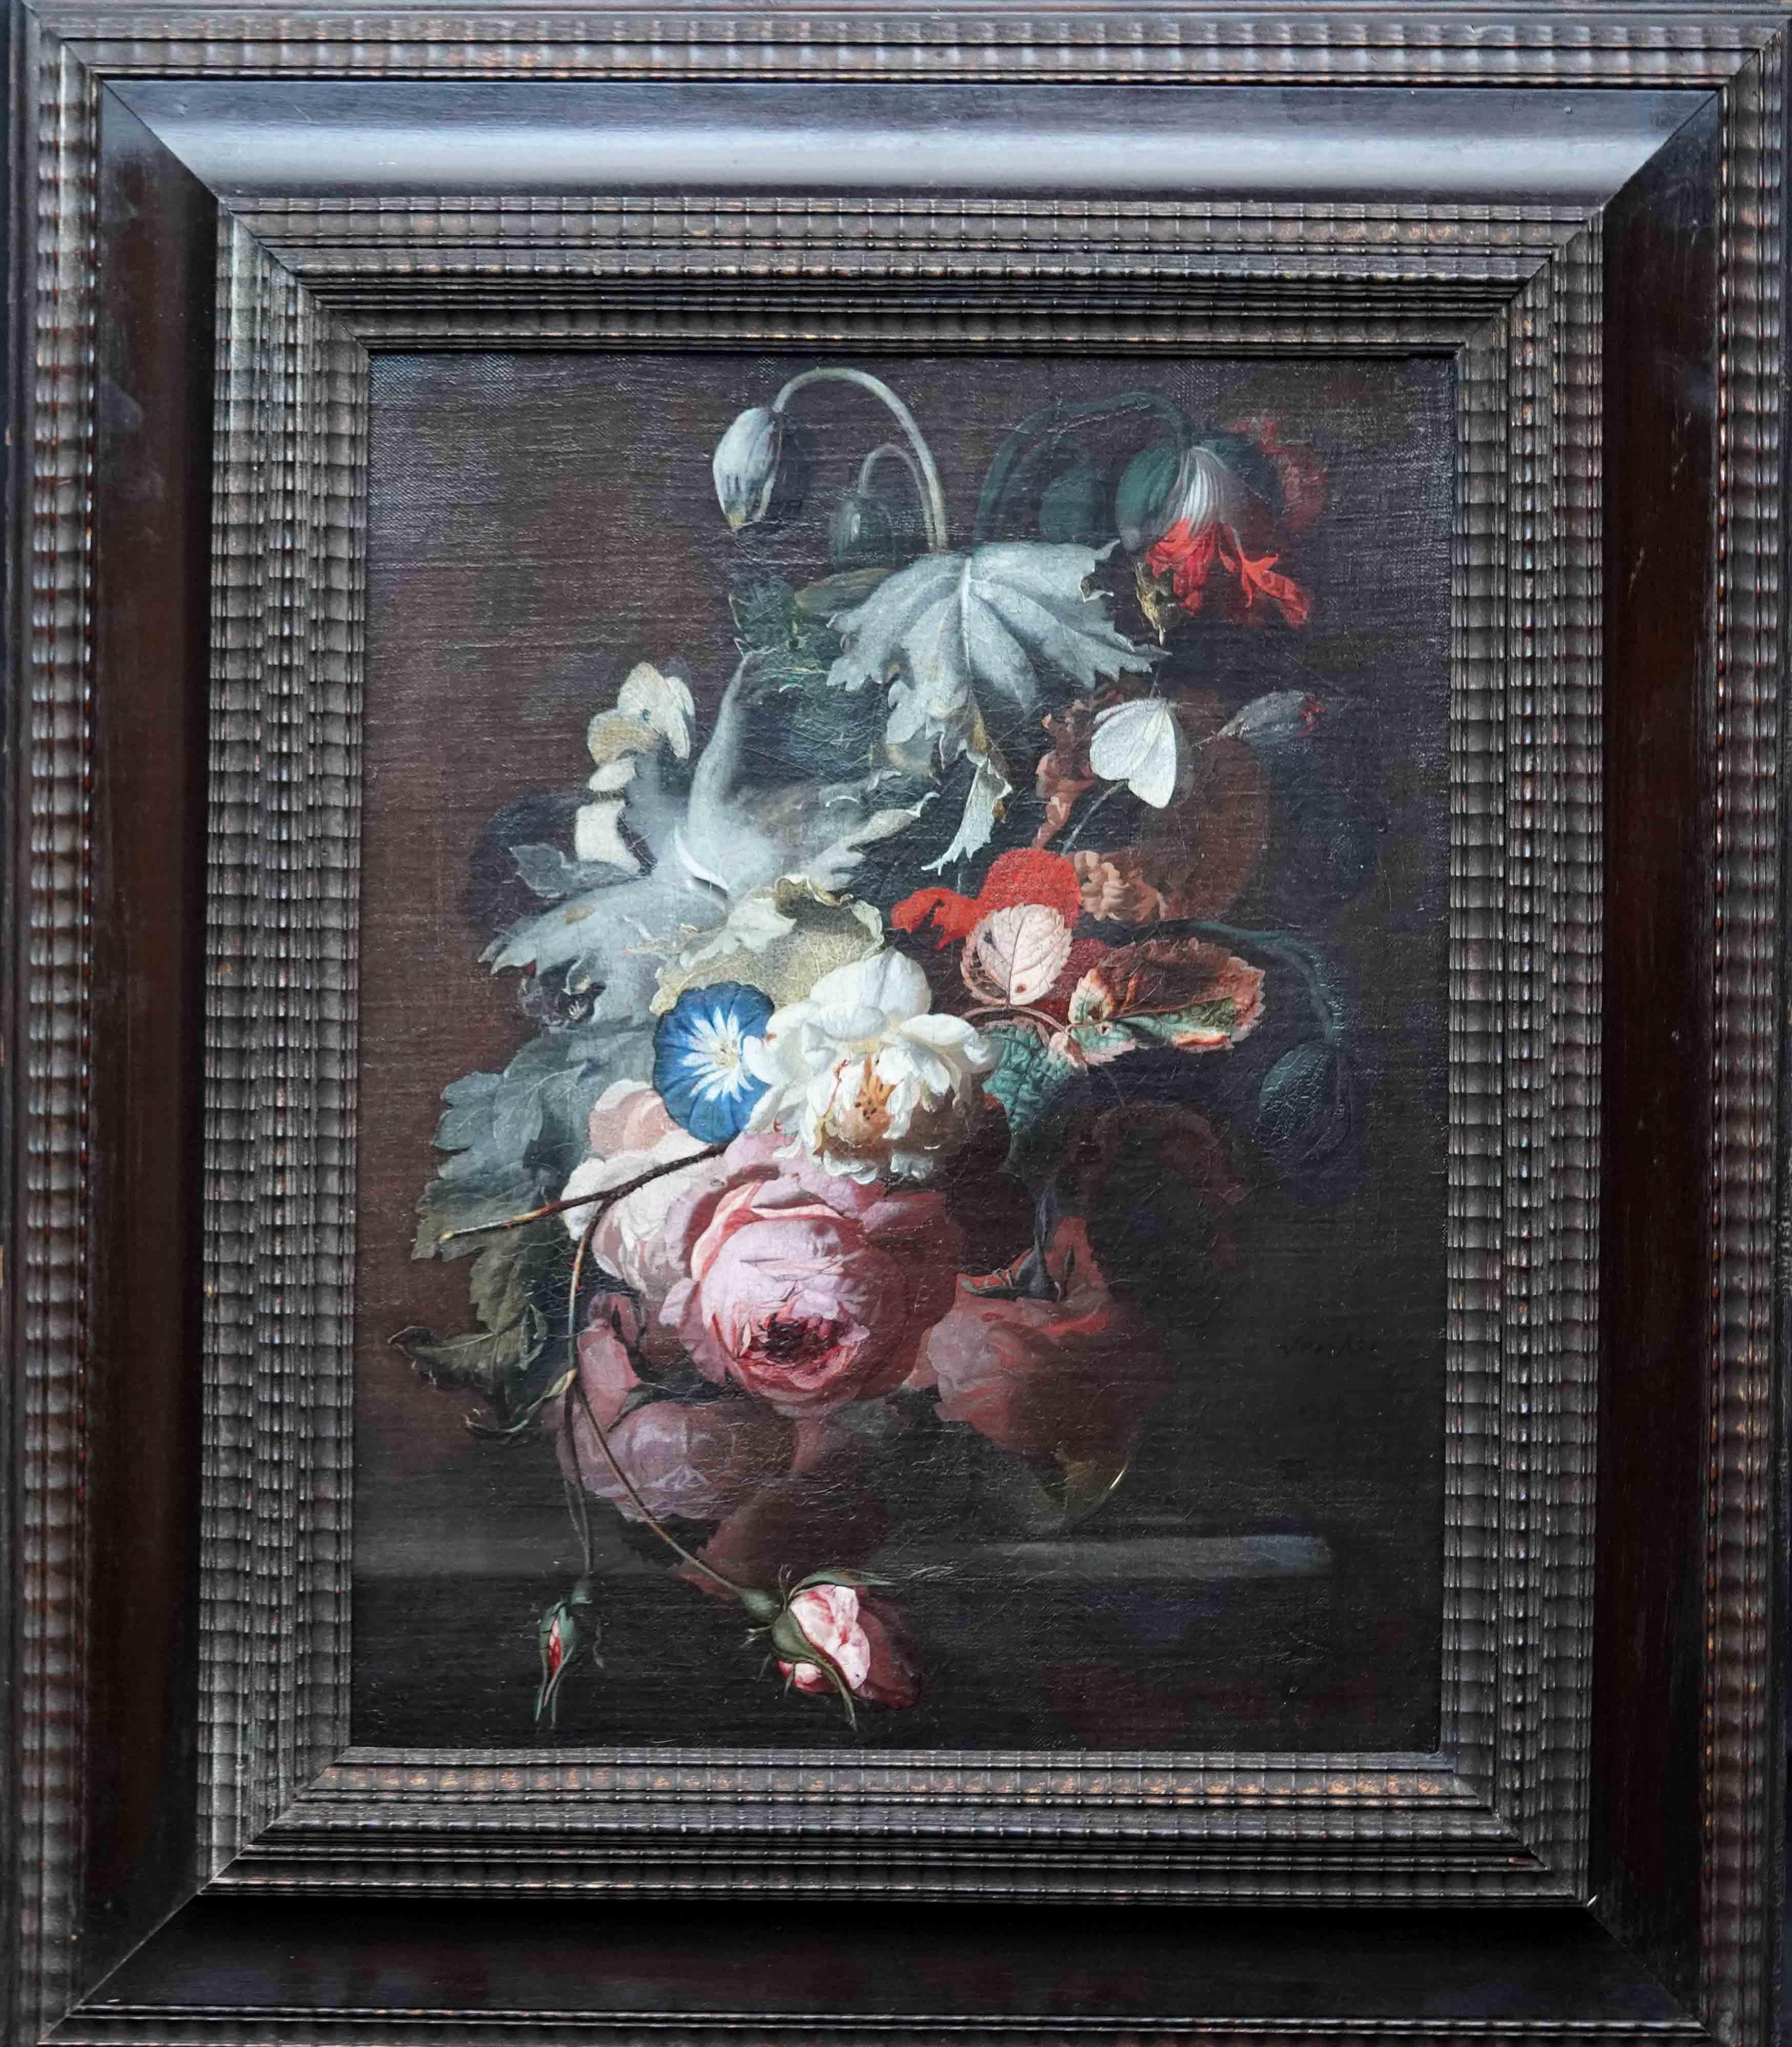 Simon Pietersz Verelst Still-Life Painting – Stillleben mit Blumen in Vase auf Ledge – niederländisches Ölgemälde eines alten Meisters aus dem 17. Jahrhundert